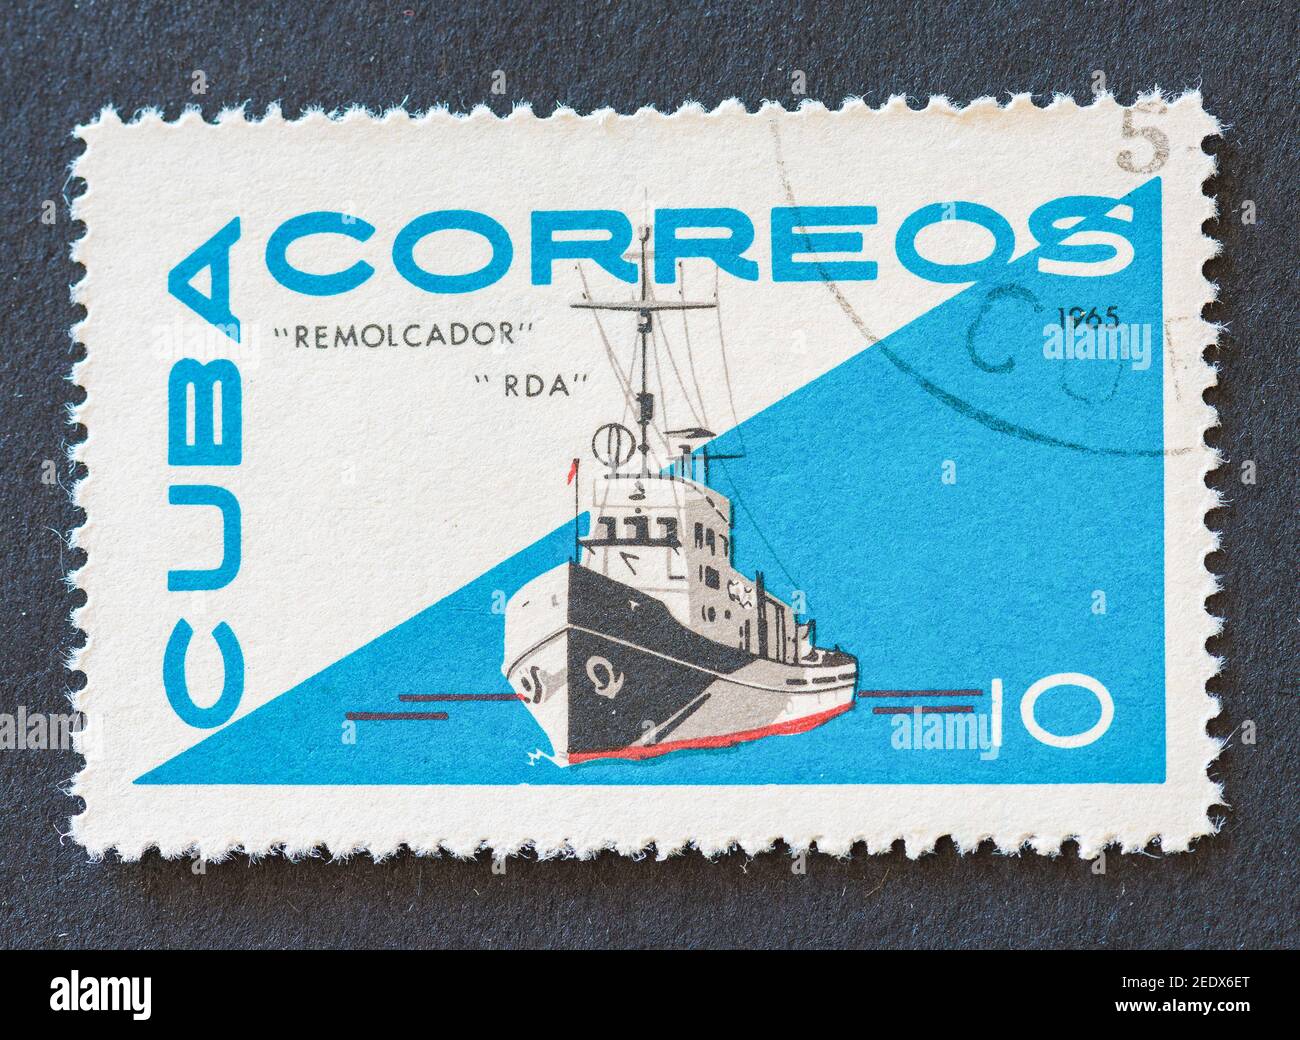 Vieux timbres postaux cubains millésimés Banque D'Images